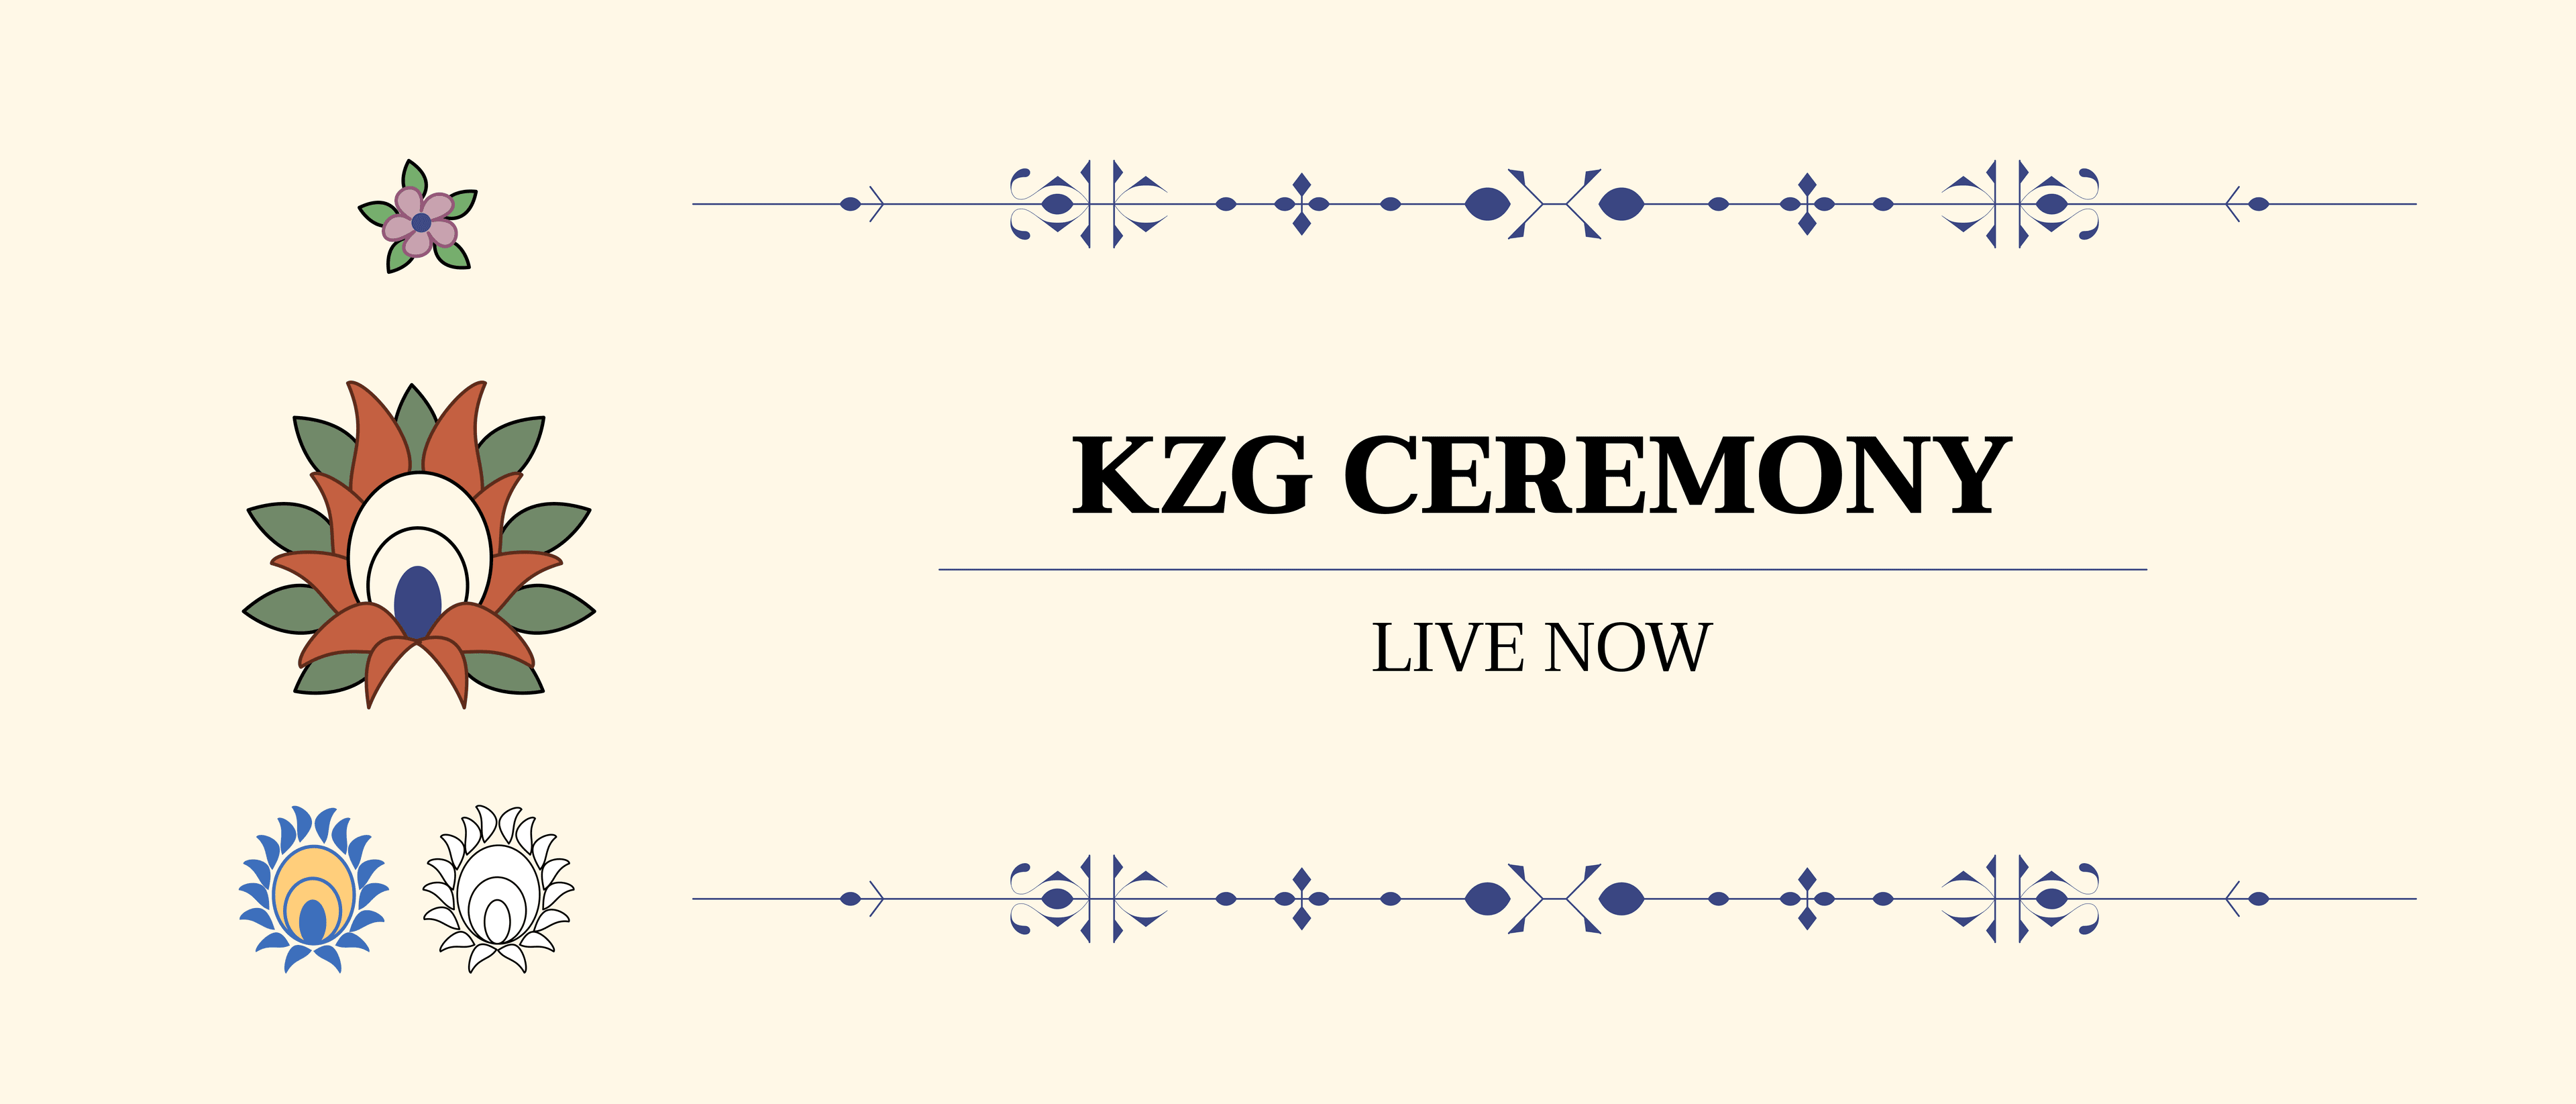 Анонс церемонии KZG